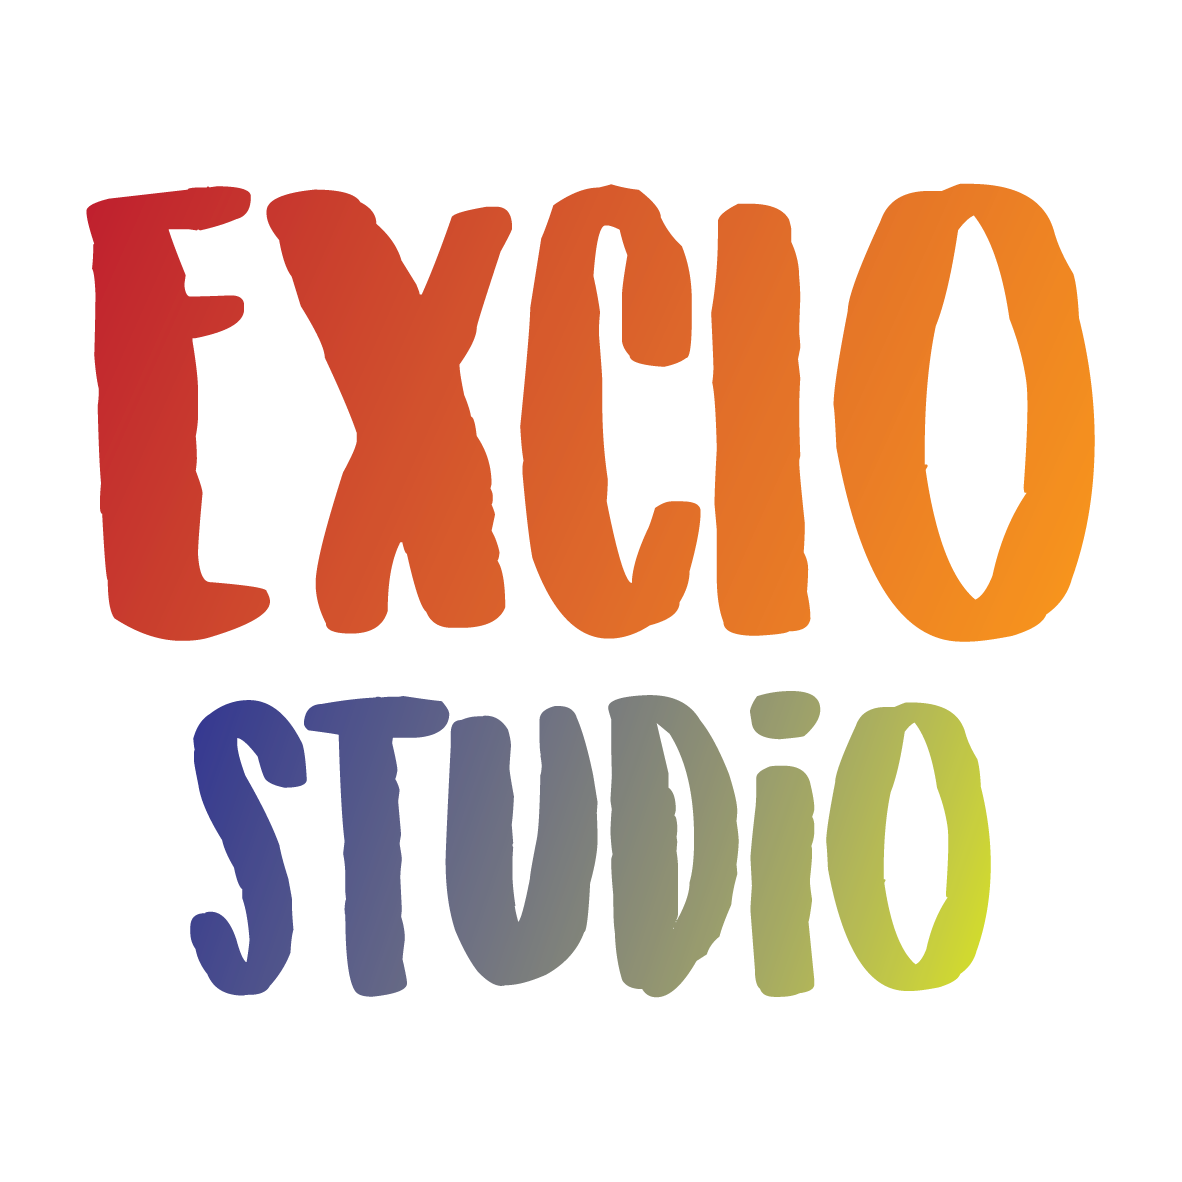 Excio Studio